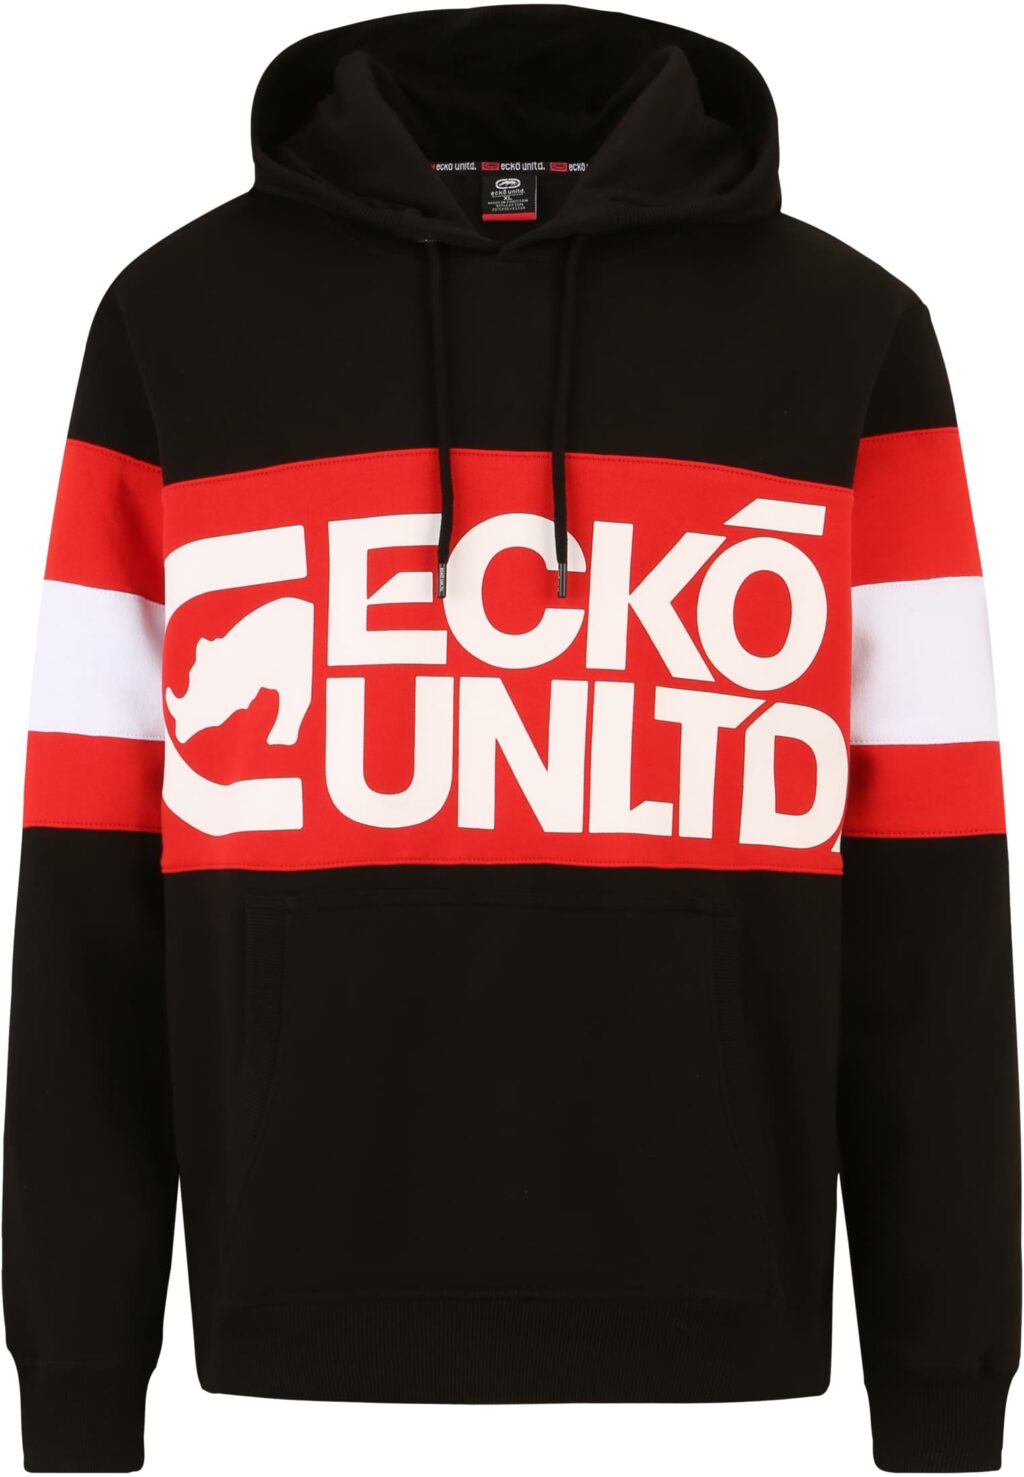 Ecko Unltd. Flagship Hoody black ECKOHD1003